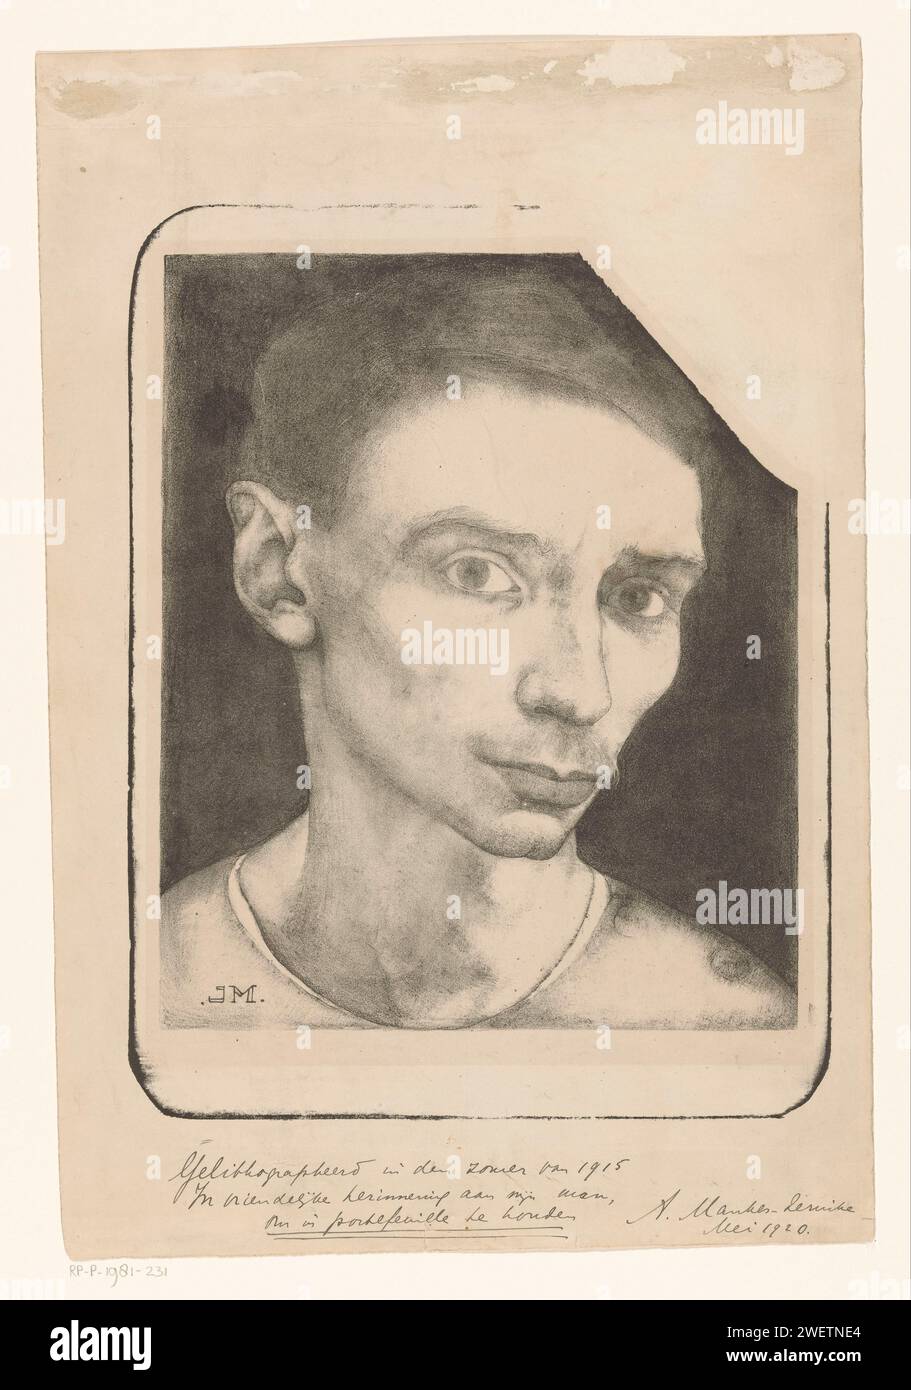 ZELFORTART, JAN Mankes, 1915 ritratto su carta stampata, autoritratto dell'artista Foto Stock